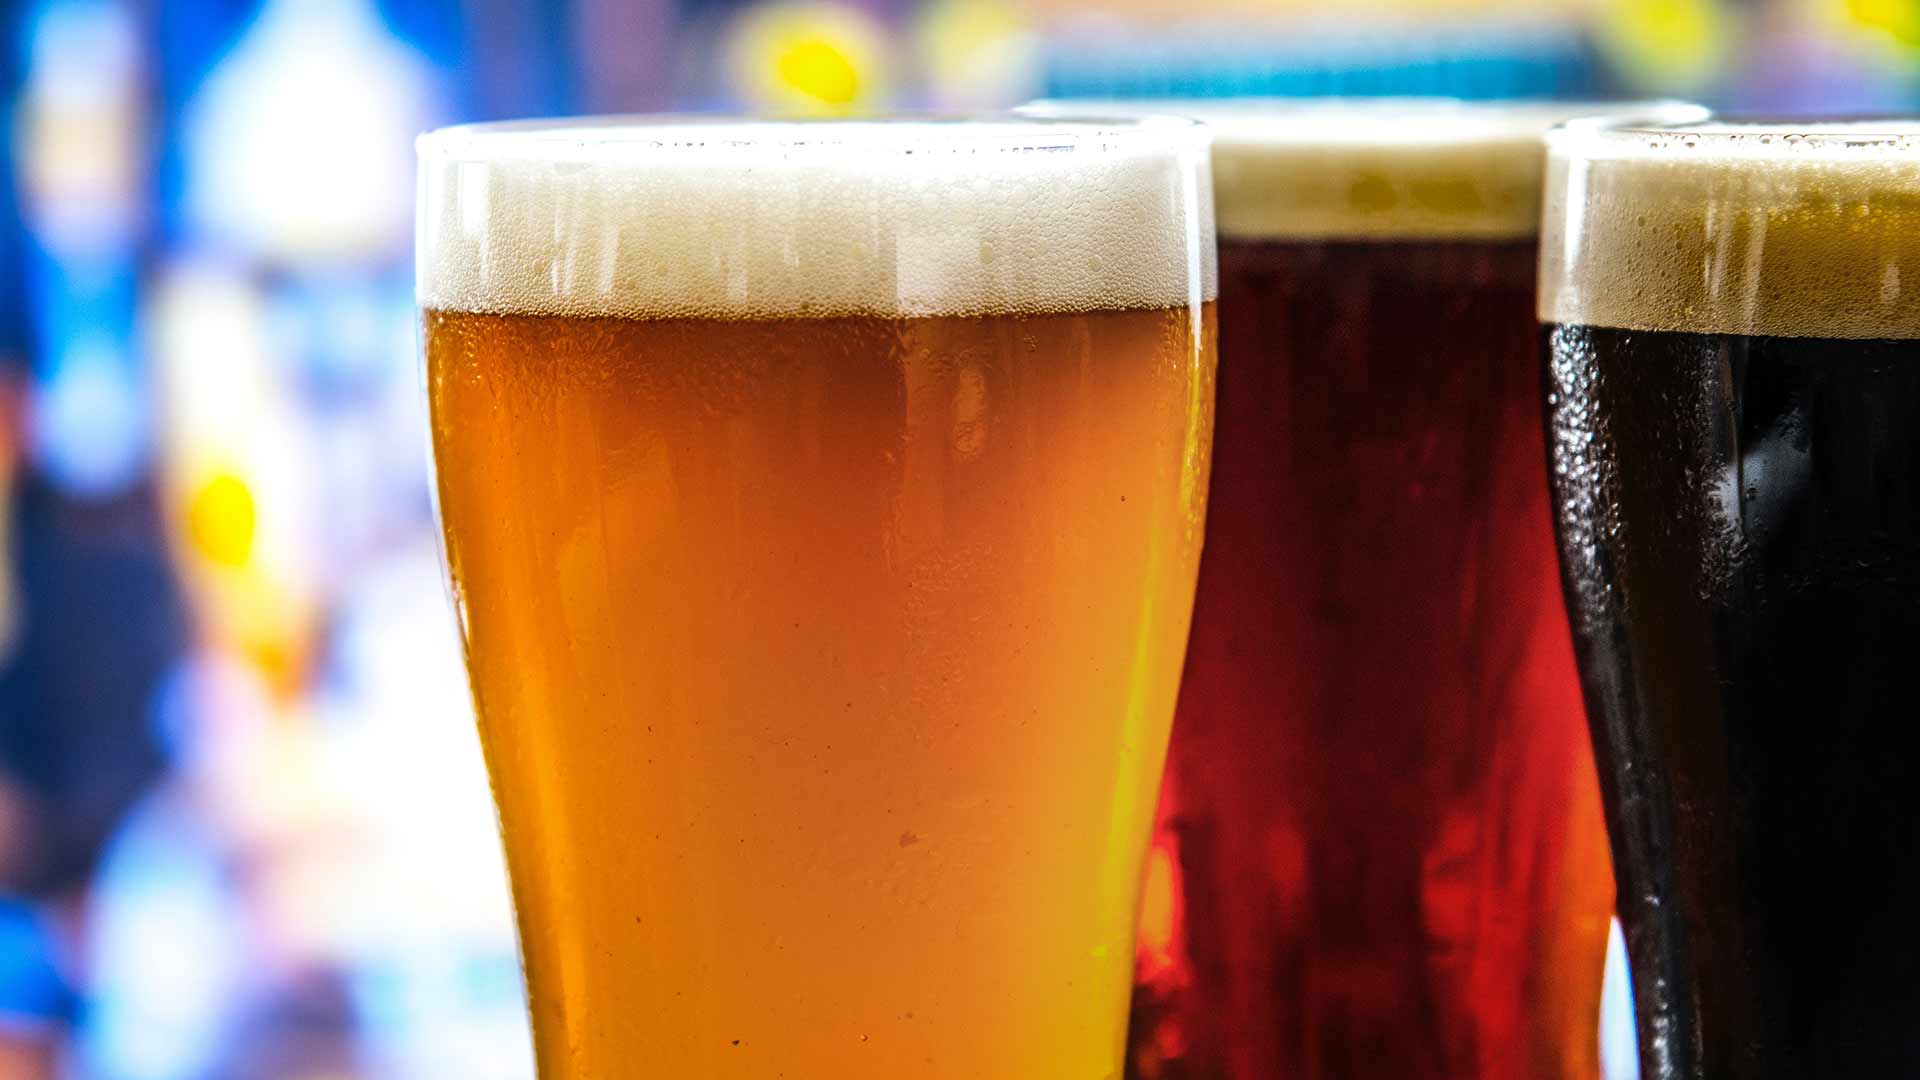 Habrá menos cerveza y será más cara debido al cambio climático